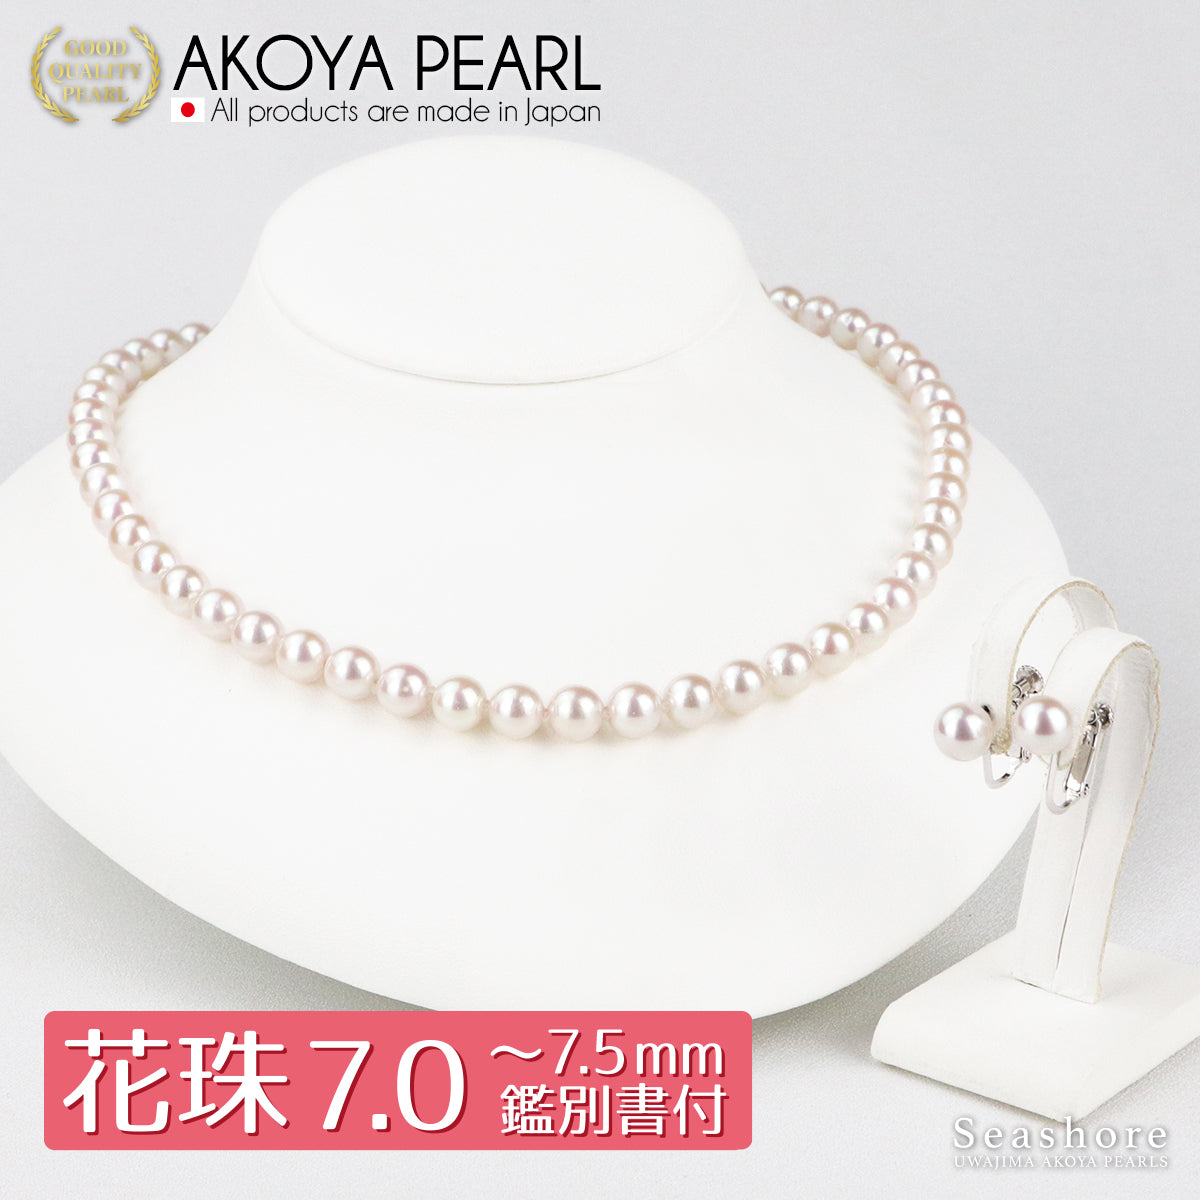 花珠珍珠正装项链 2 件装 [7.0-7.5 毫米]（含耳环）正装套装，带真品证书和仪式场合用储物盒